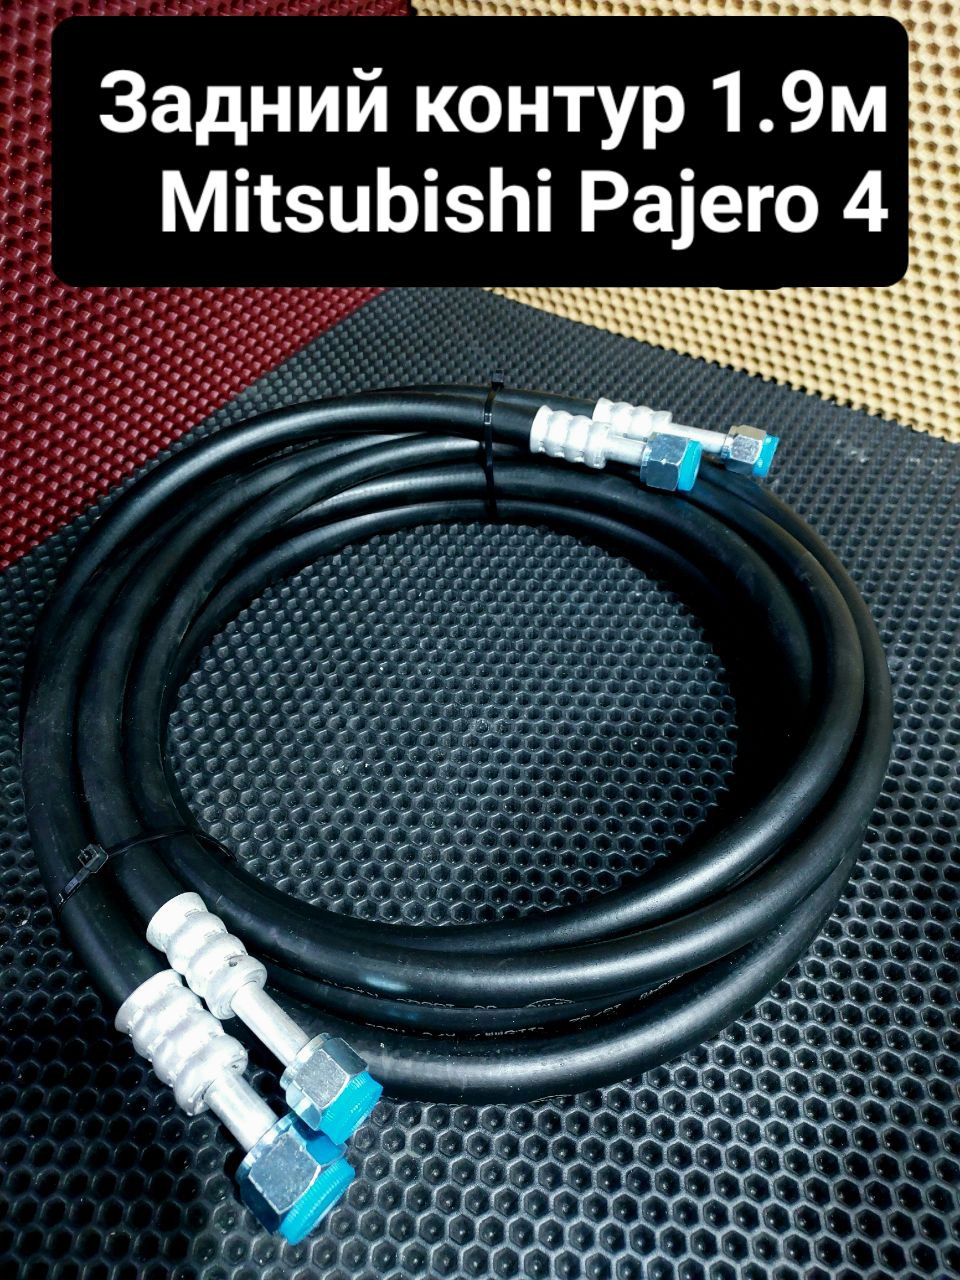 Шланги кондиционера Mitsubishi pajero 4